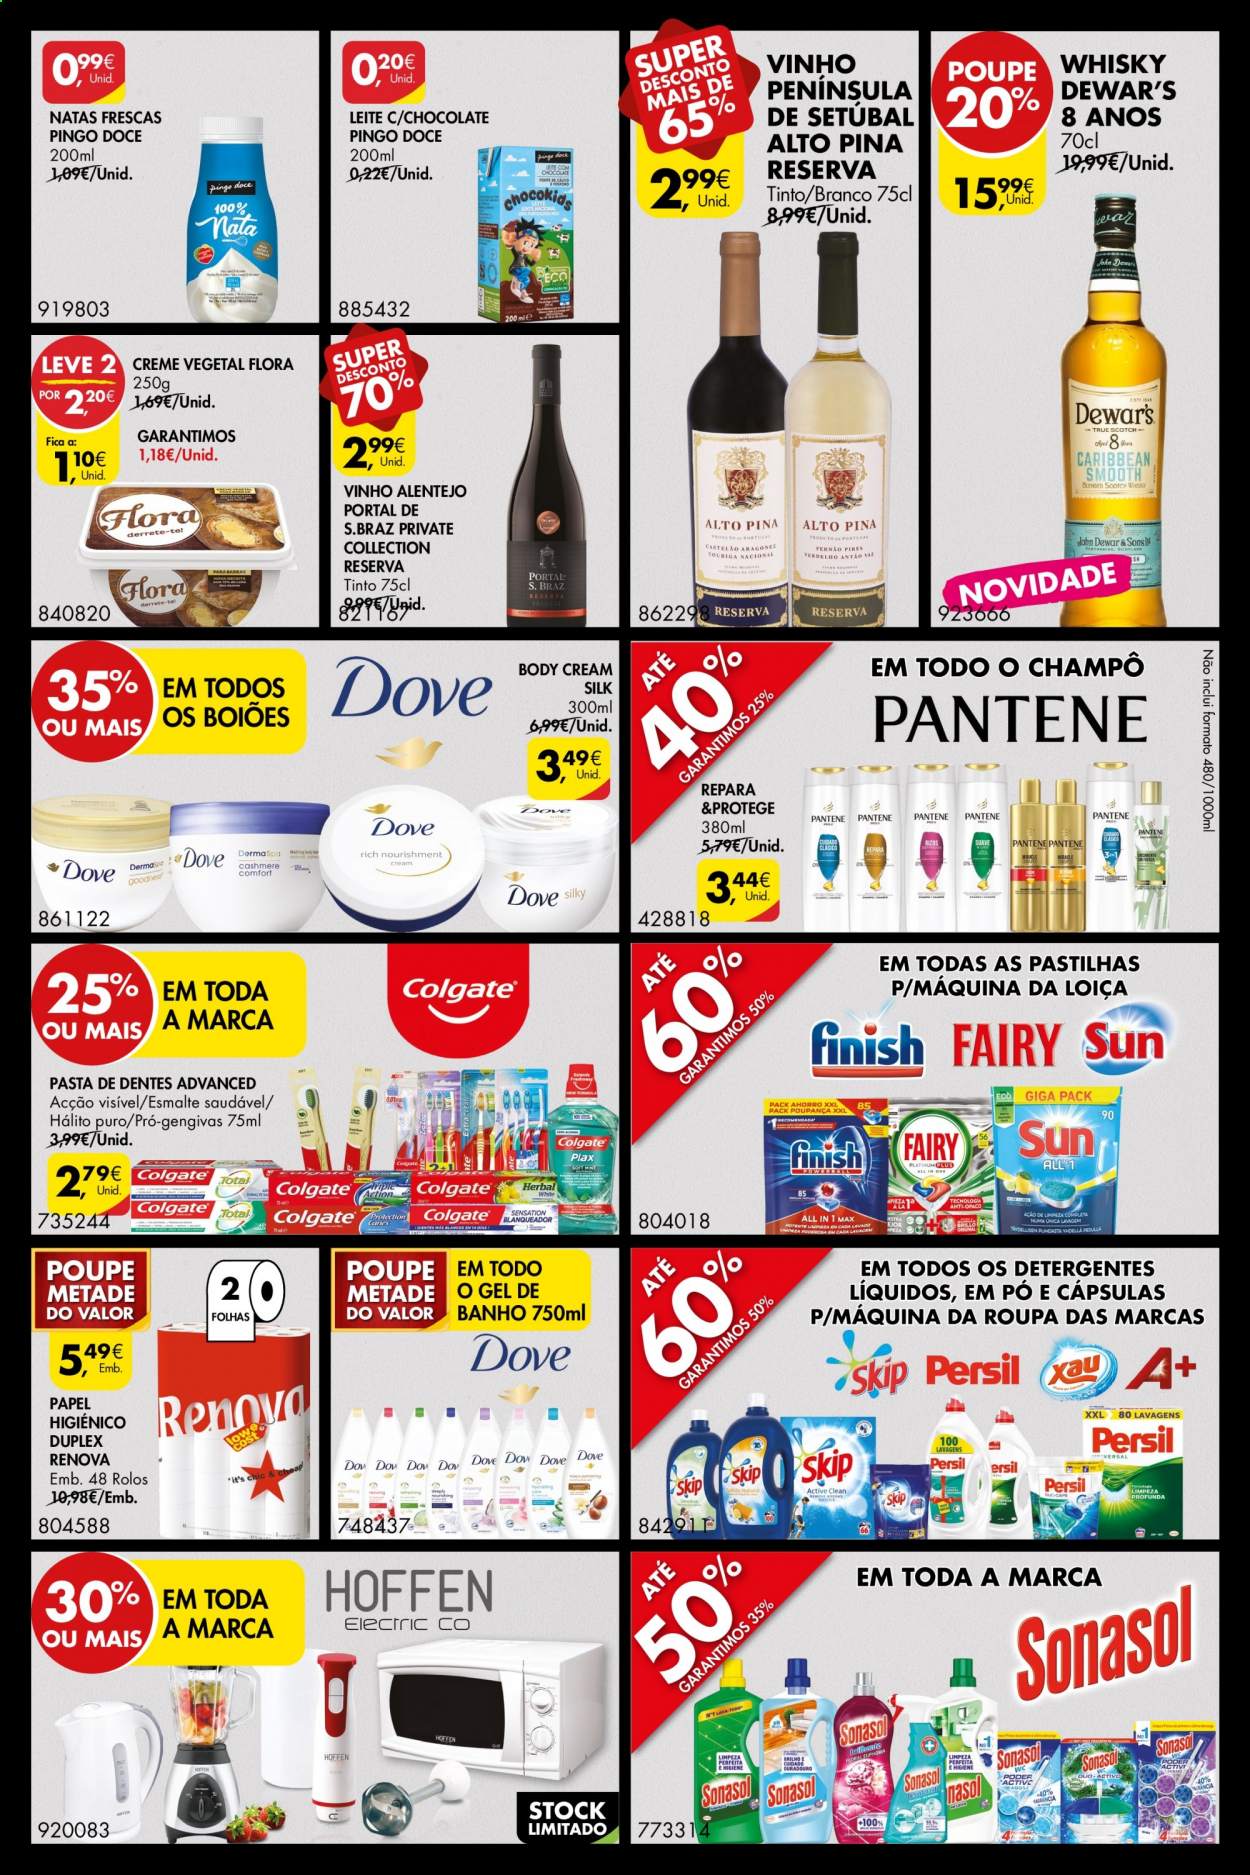 thumbnail - Folheto Pingo Doce - 9.4.2021 - 12.4.2021 - Produtos em promoção - leite, vinho, whiskey, papel higiénico, detergente, shampoo, gel de banho, pasta dentífrica. Página 3.